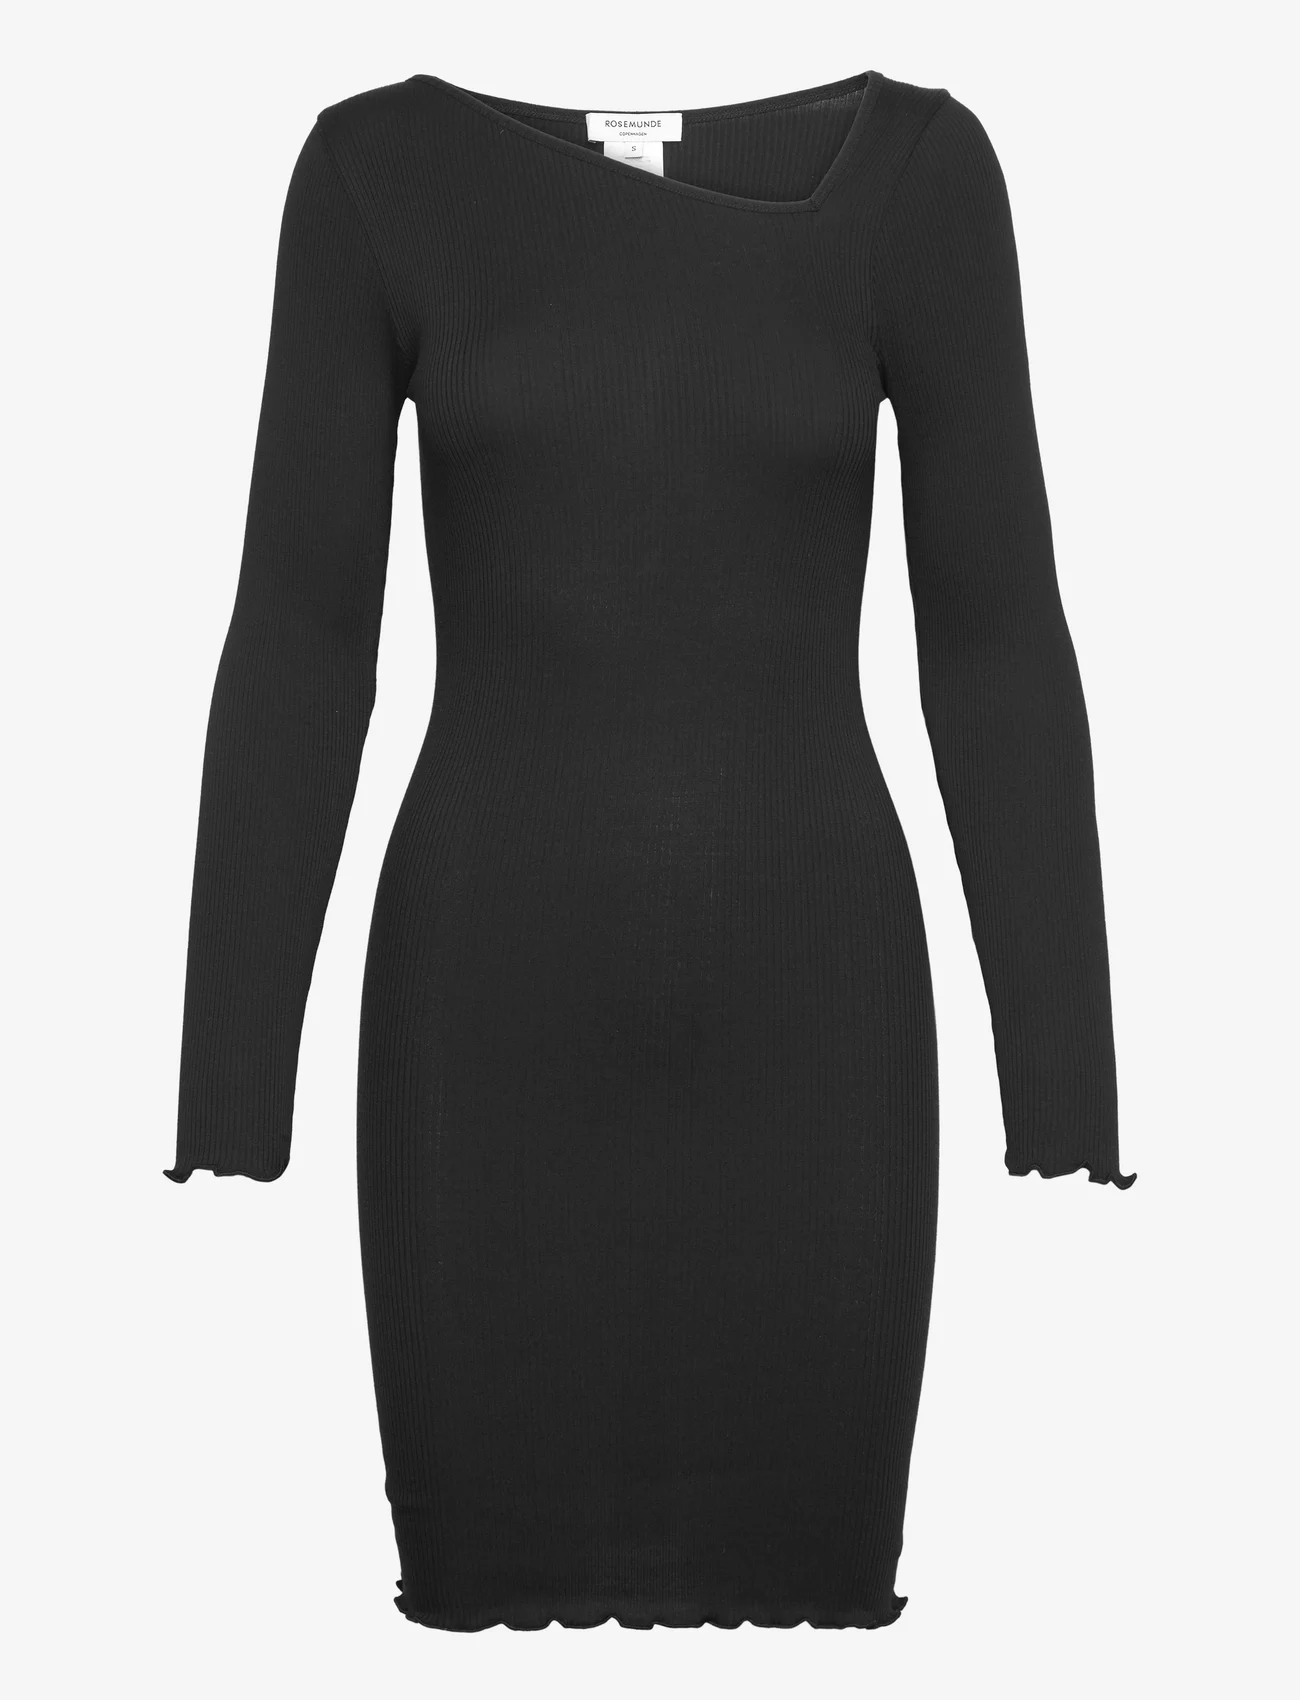 Rosemunde - Cotton dress - etuikleider - black - 0